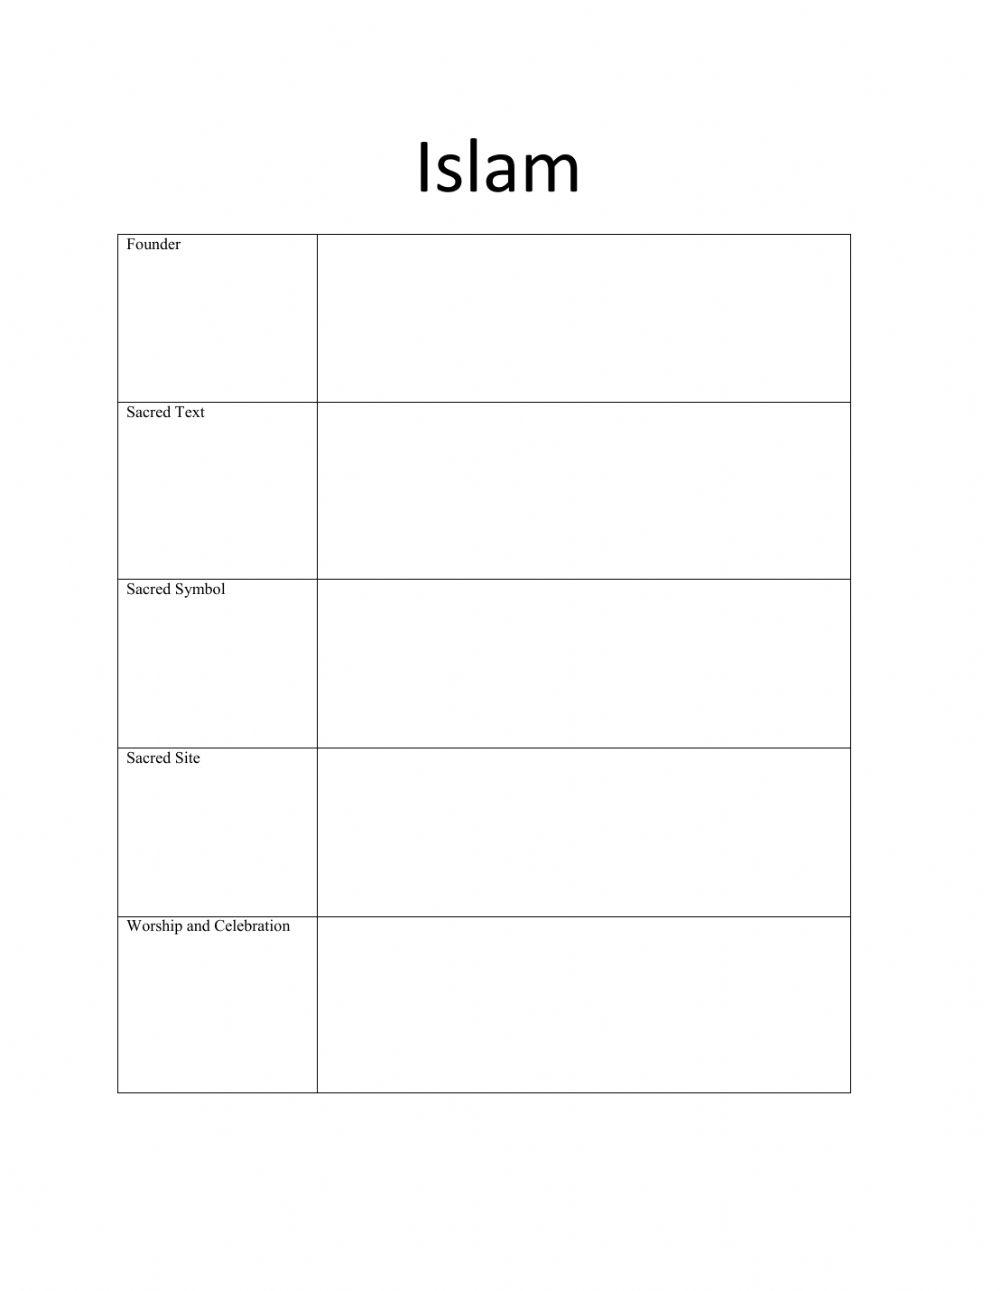 Islam Questions